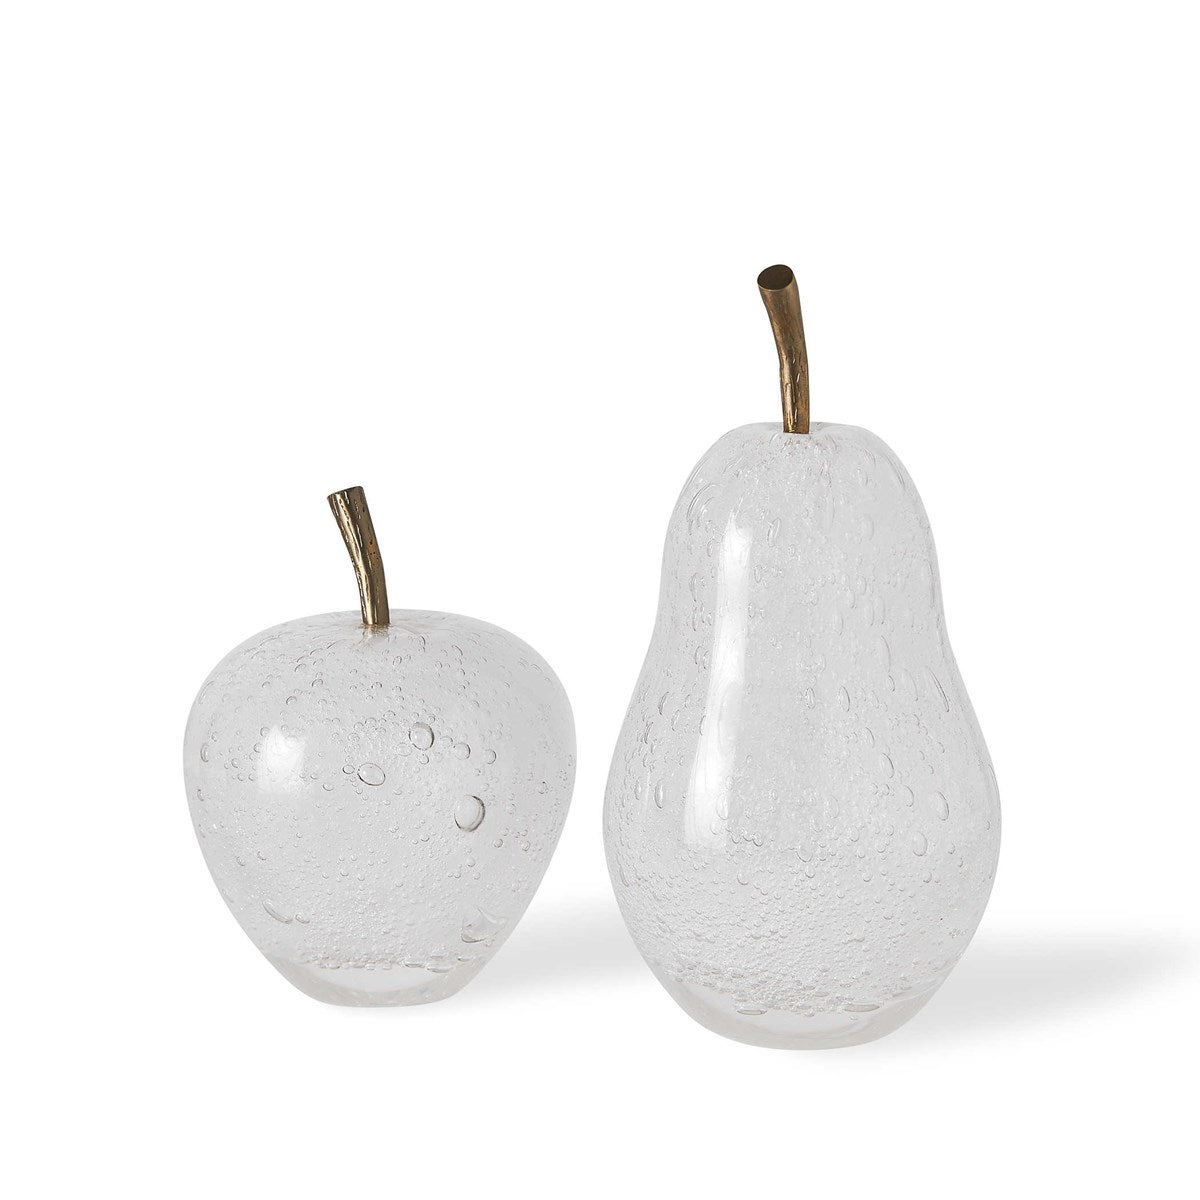 Adorno Apple &amp; Pear S/2